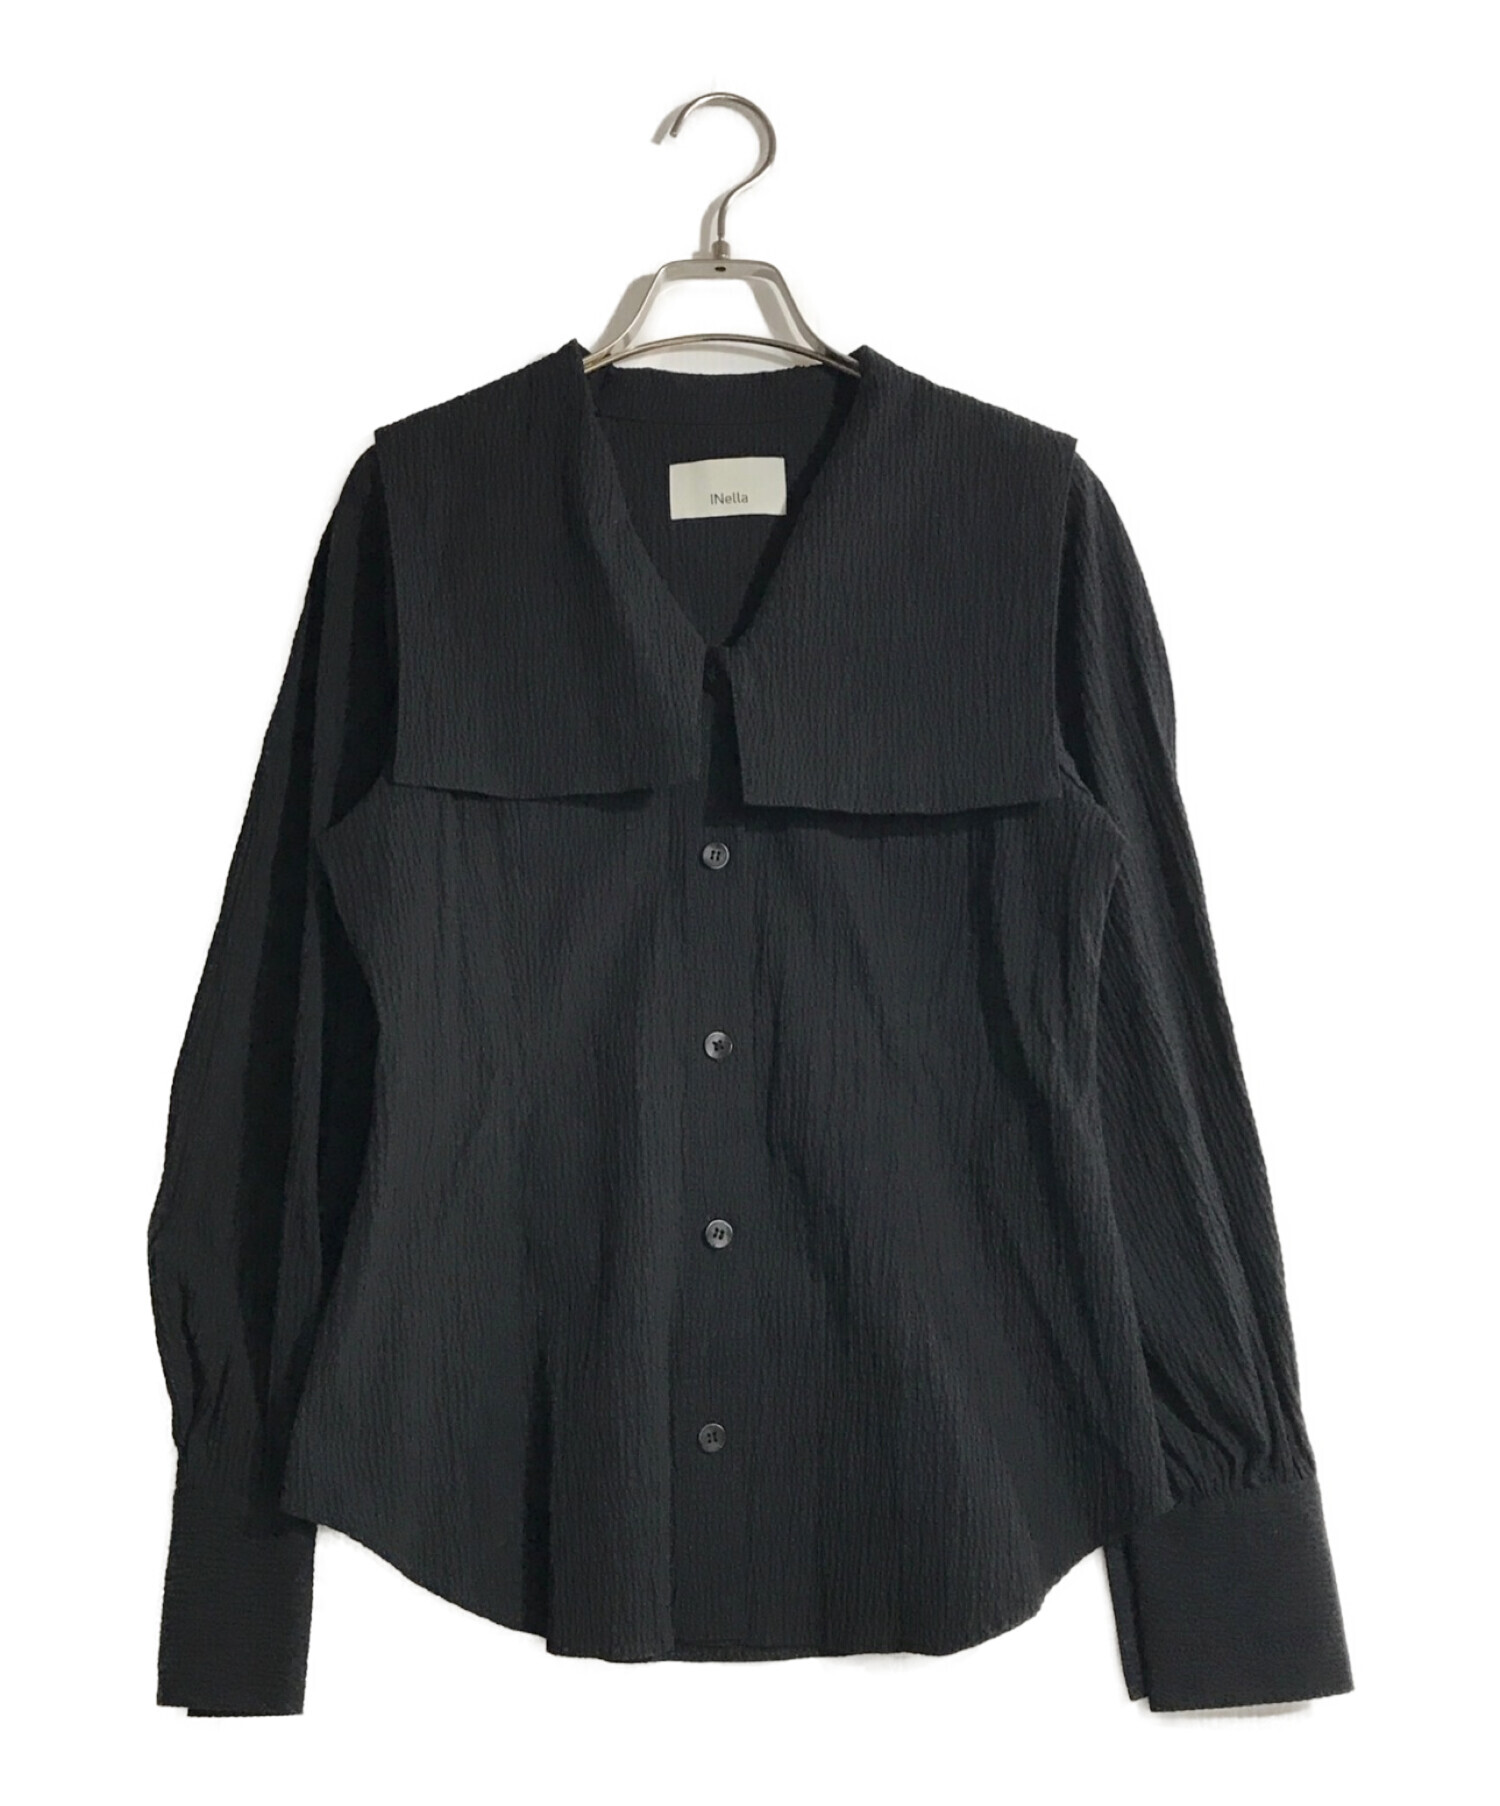 INella (イネラ) リップルビッグカラーシャツ ブラック サイズ:F 未使用品